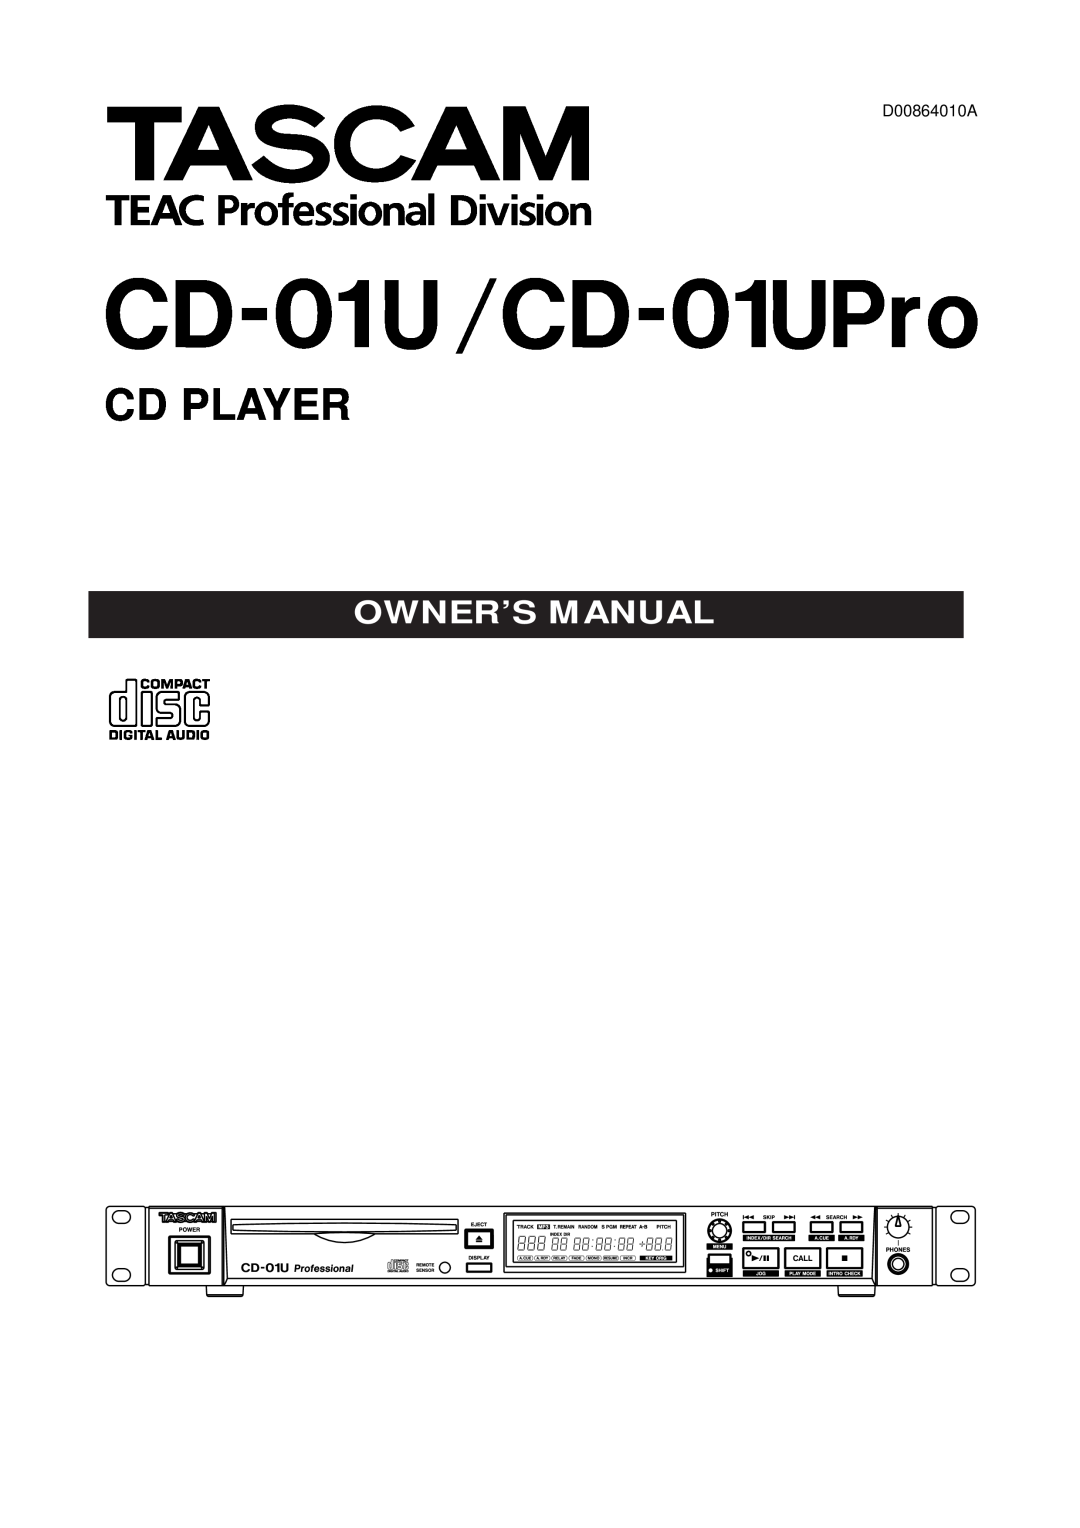 Tascam owner manual CD-01 U /CD-01UPro, Cd Player, D00864010A 